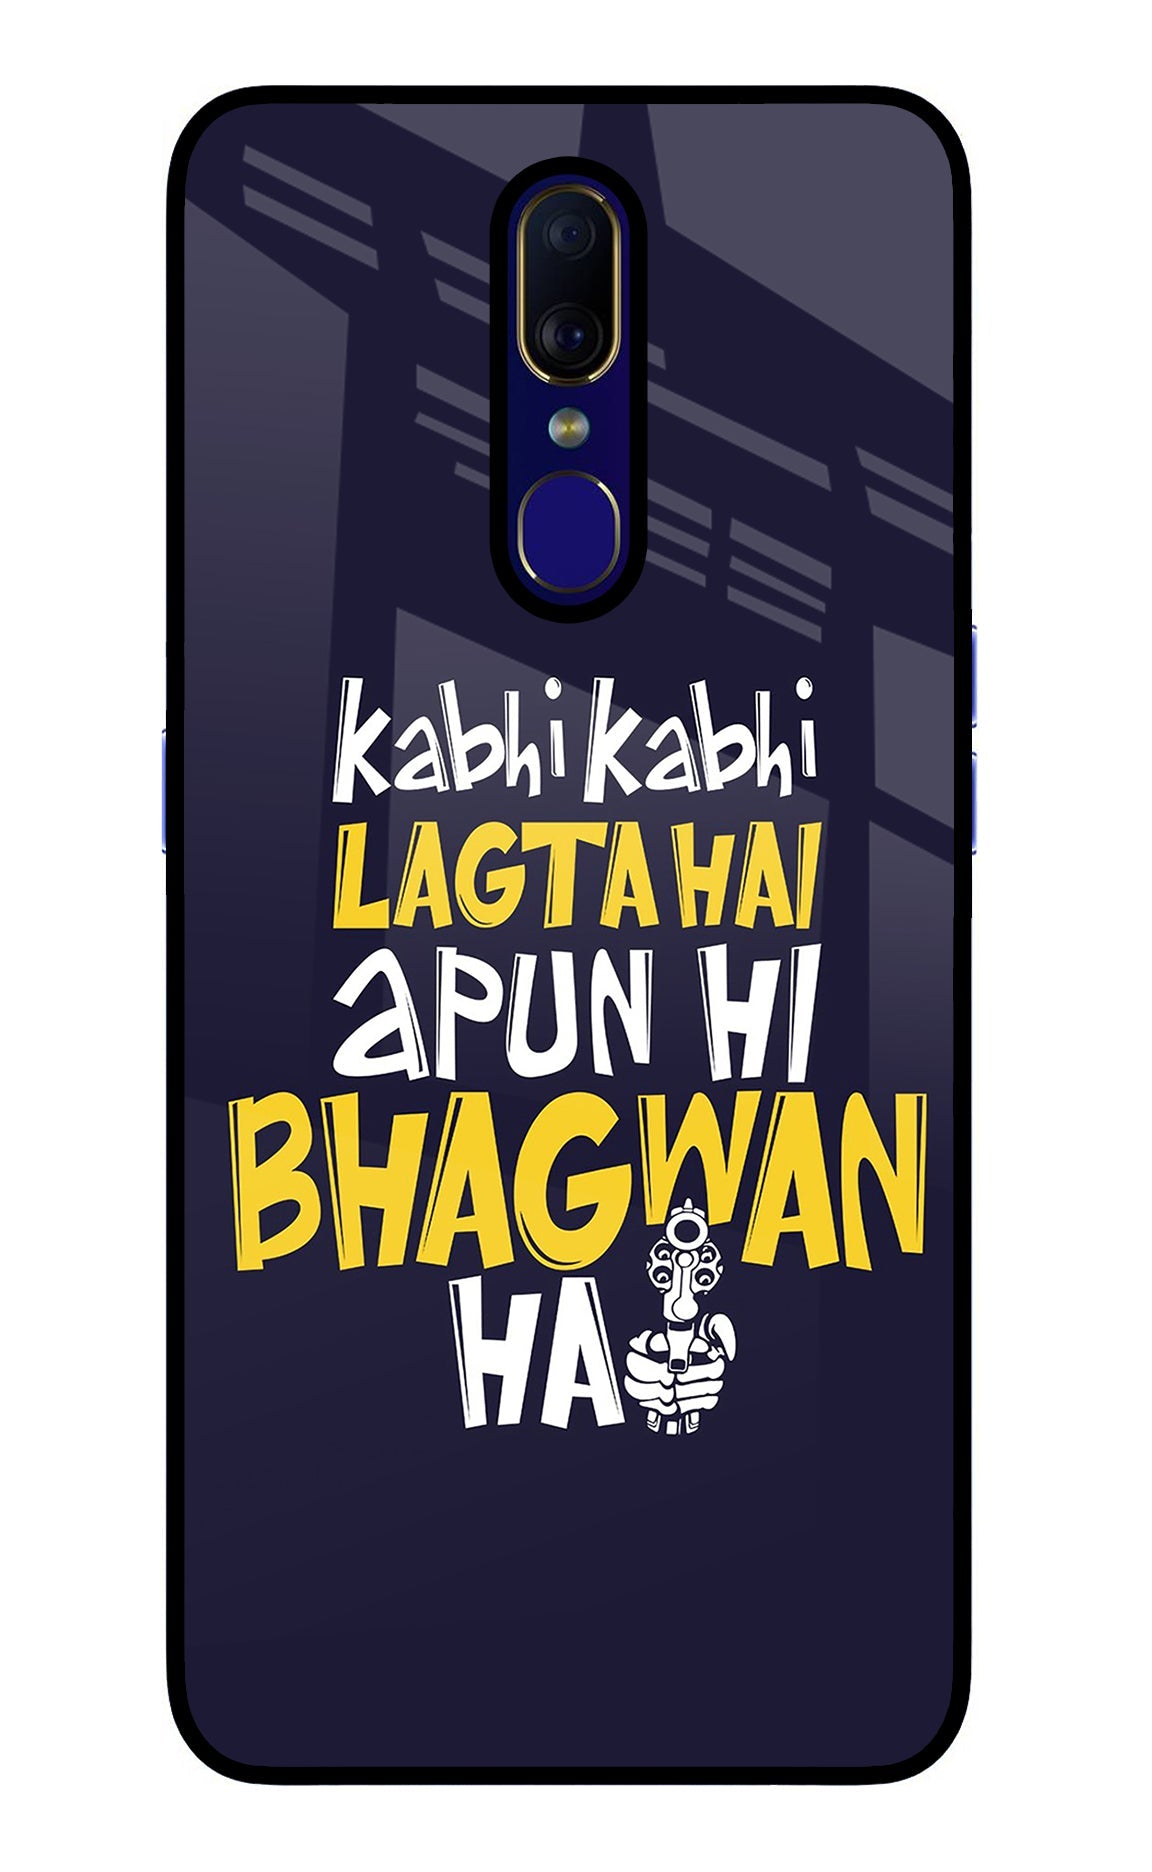 Kabhi Kabhi Lagta Hai Apun Hi Bhagwan Hai Oppo F11 Glass Case